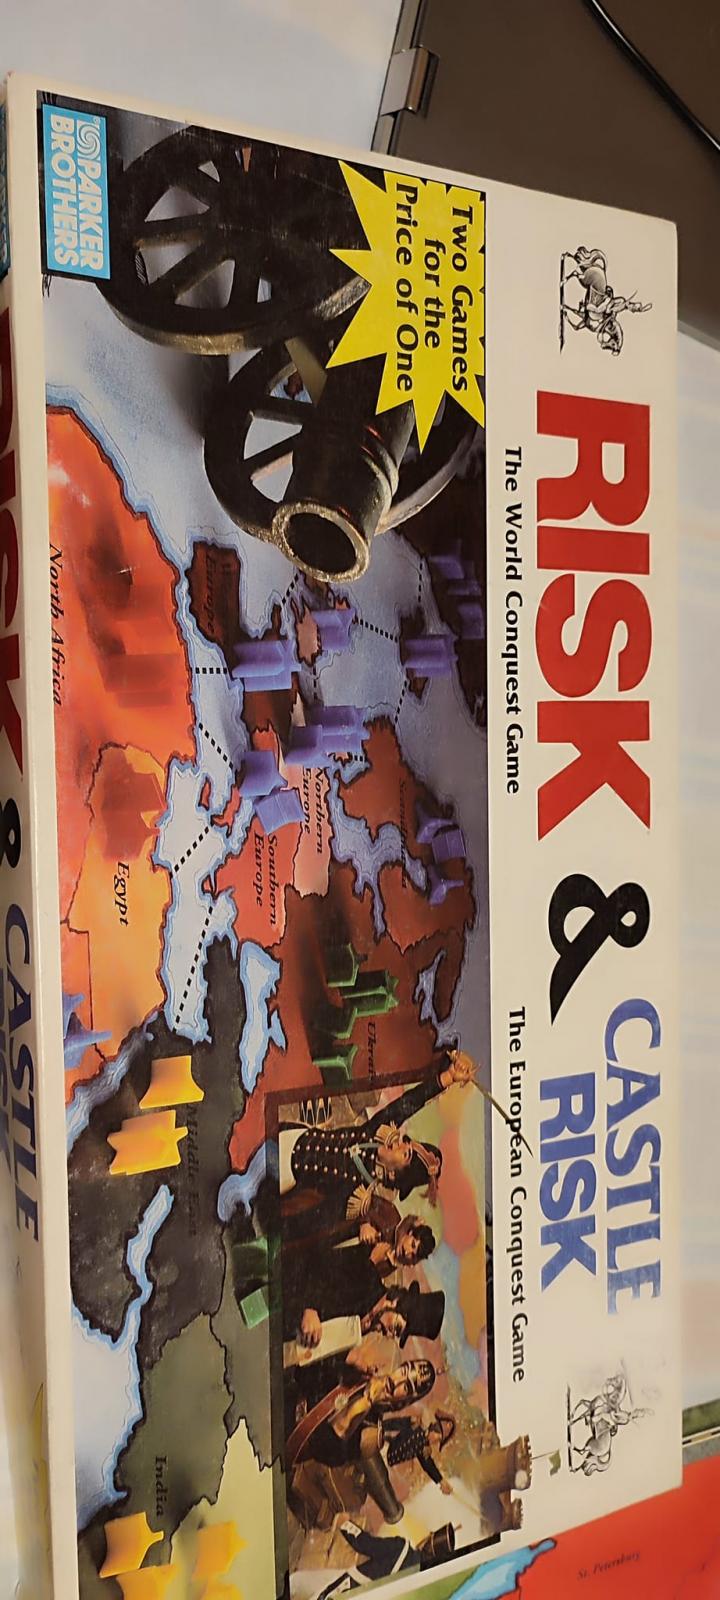 Nome:   risk & castle risk 1.jpg
Visite:  15
Grandezza:  160.0 KB